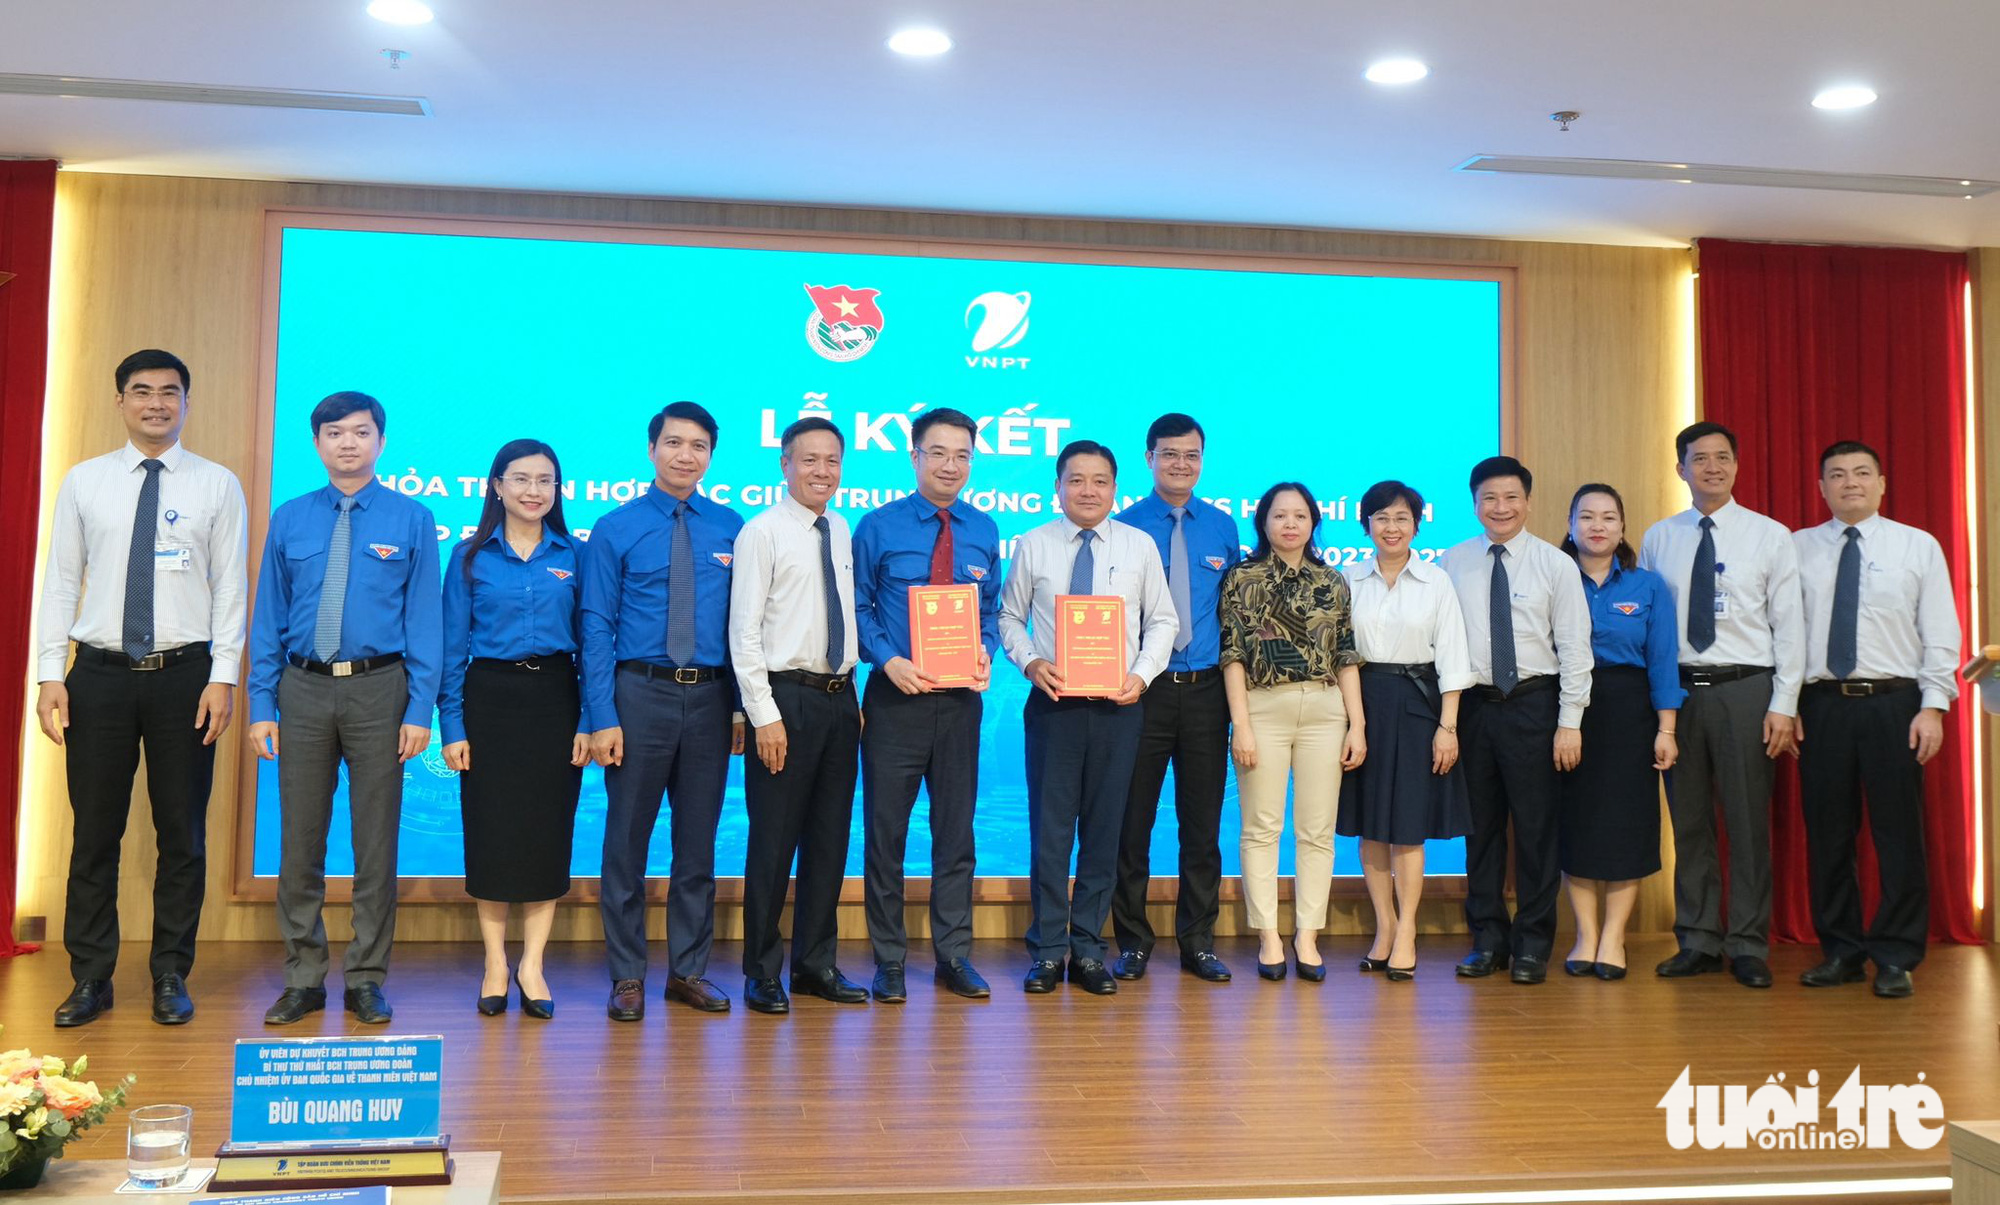 Trung ương Đoàn, VNPT Việt Nam cùng ký kết hợp tác giai đoạn 2023 - 2027 với nhiều nội dung thiết thực, tập trung hoạt động chuyển đổi số - Ảnh: HÀ THANH